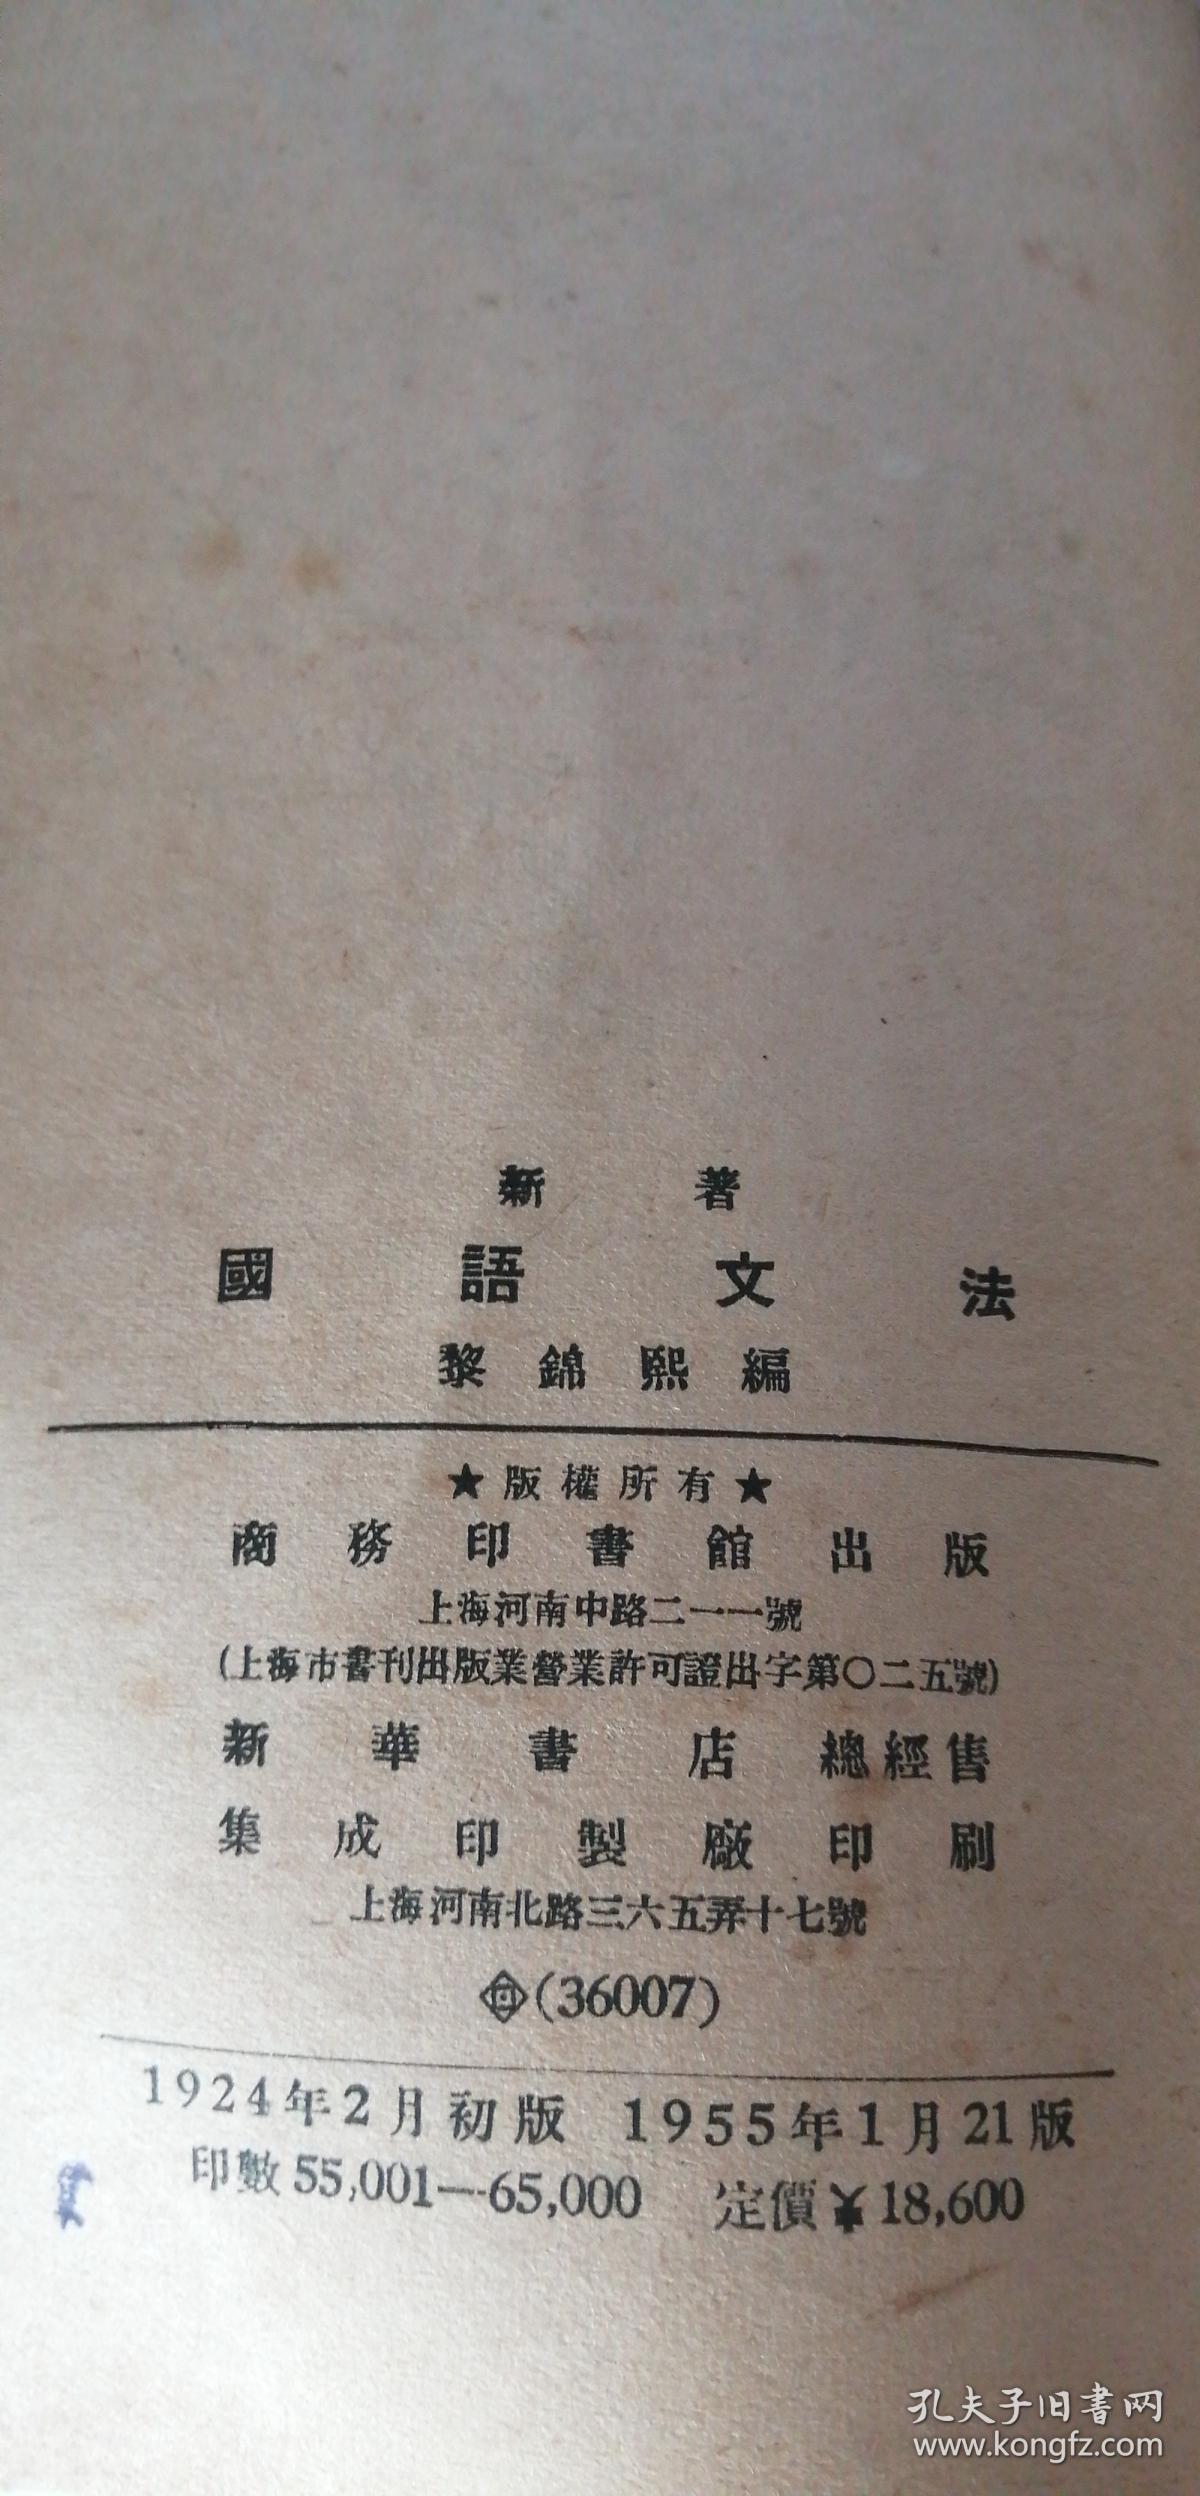 新著国语文法黎锦熙商务印书馆1955年版 孔夫子旧书网